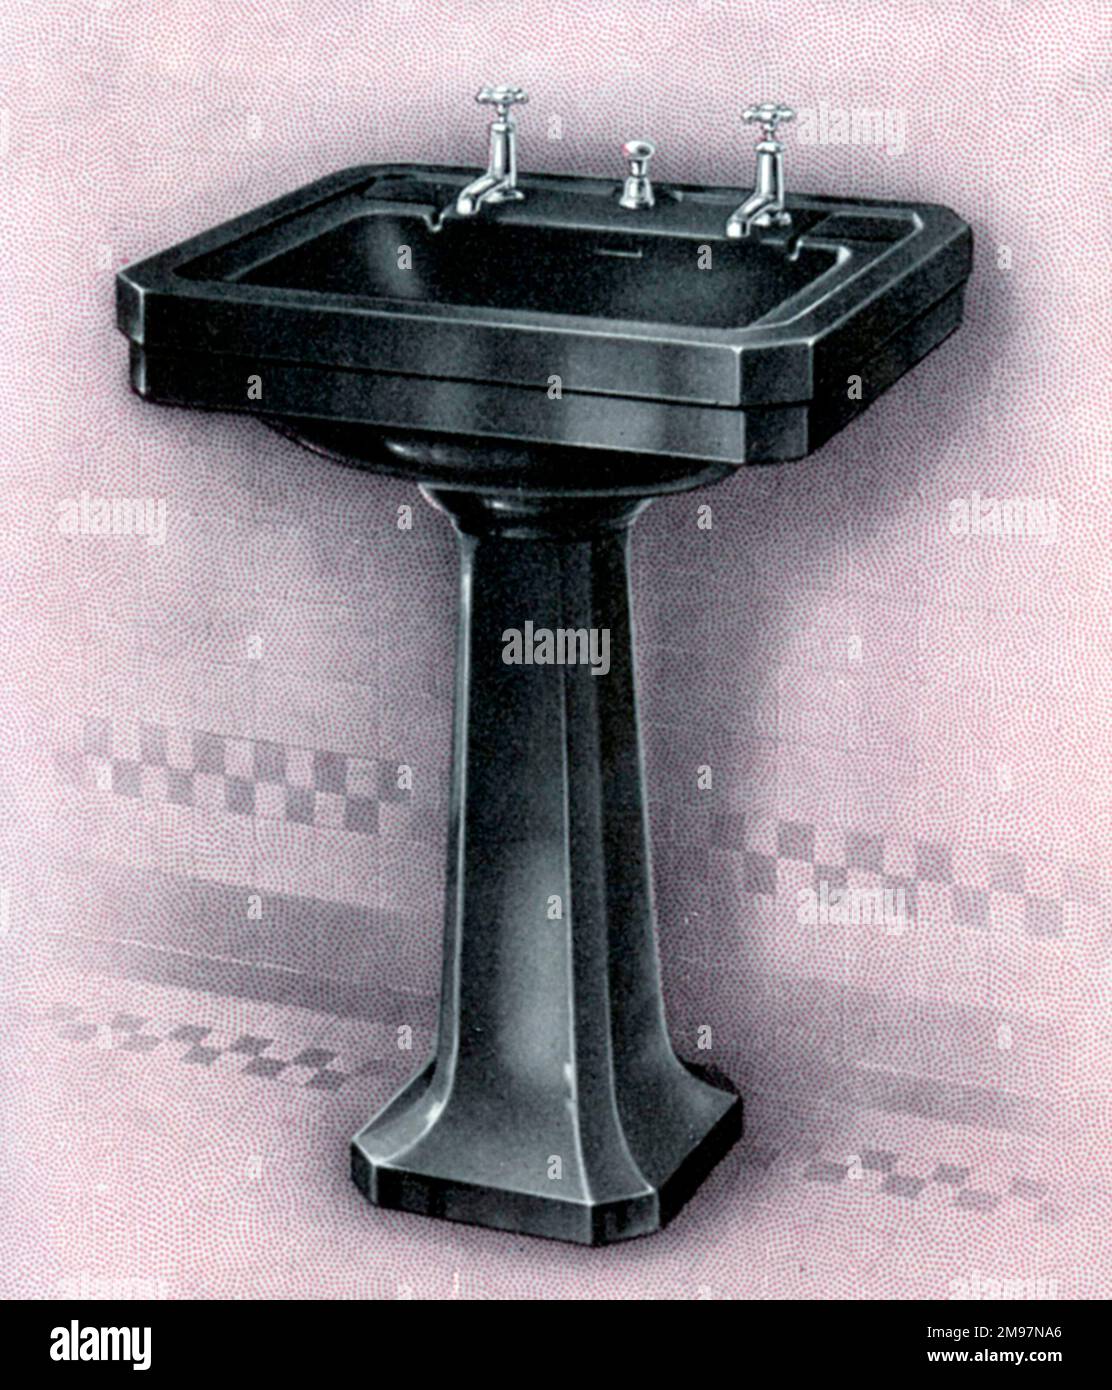 'Vitramant' Coloured Pedestal Lavatory (washbasin) finished in black enamel. Stock Photo